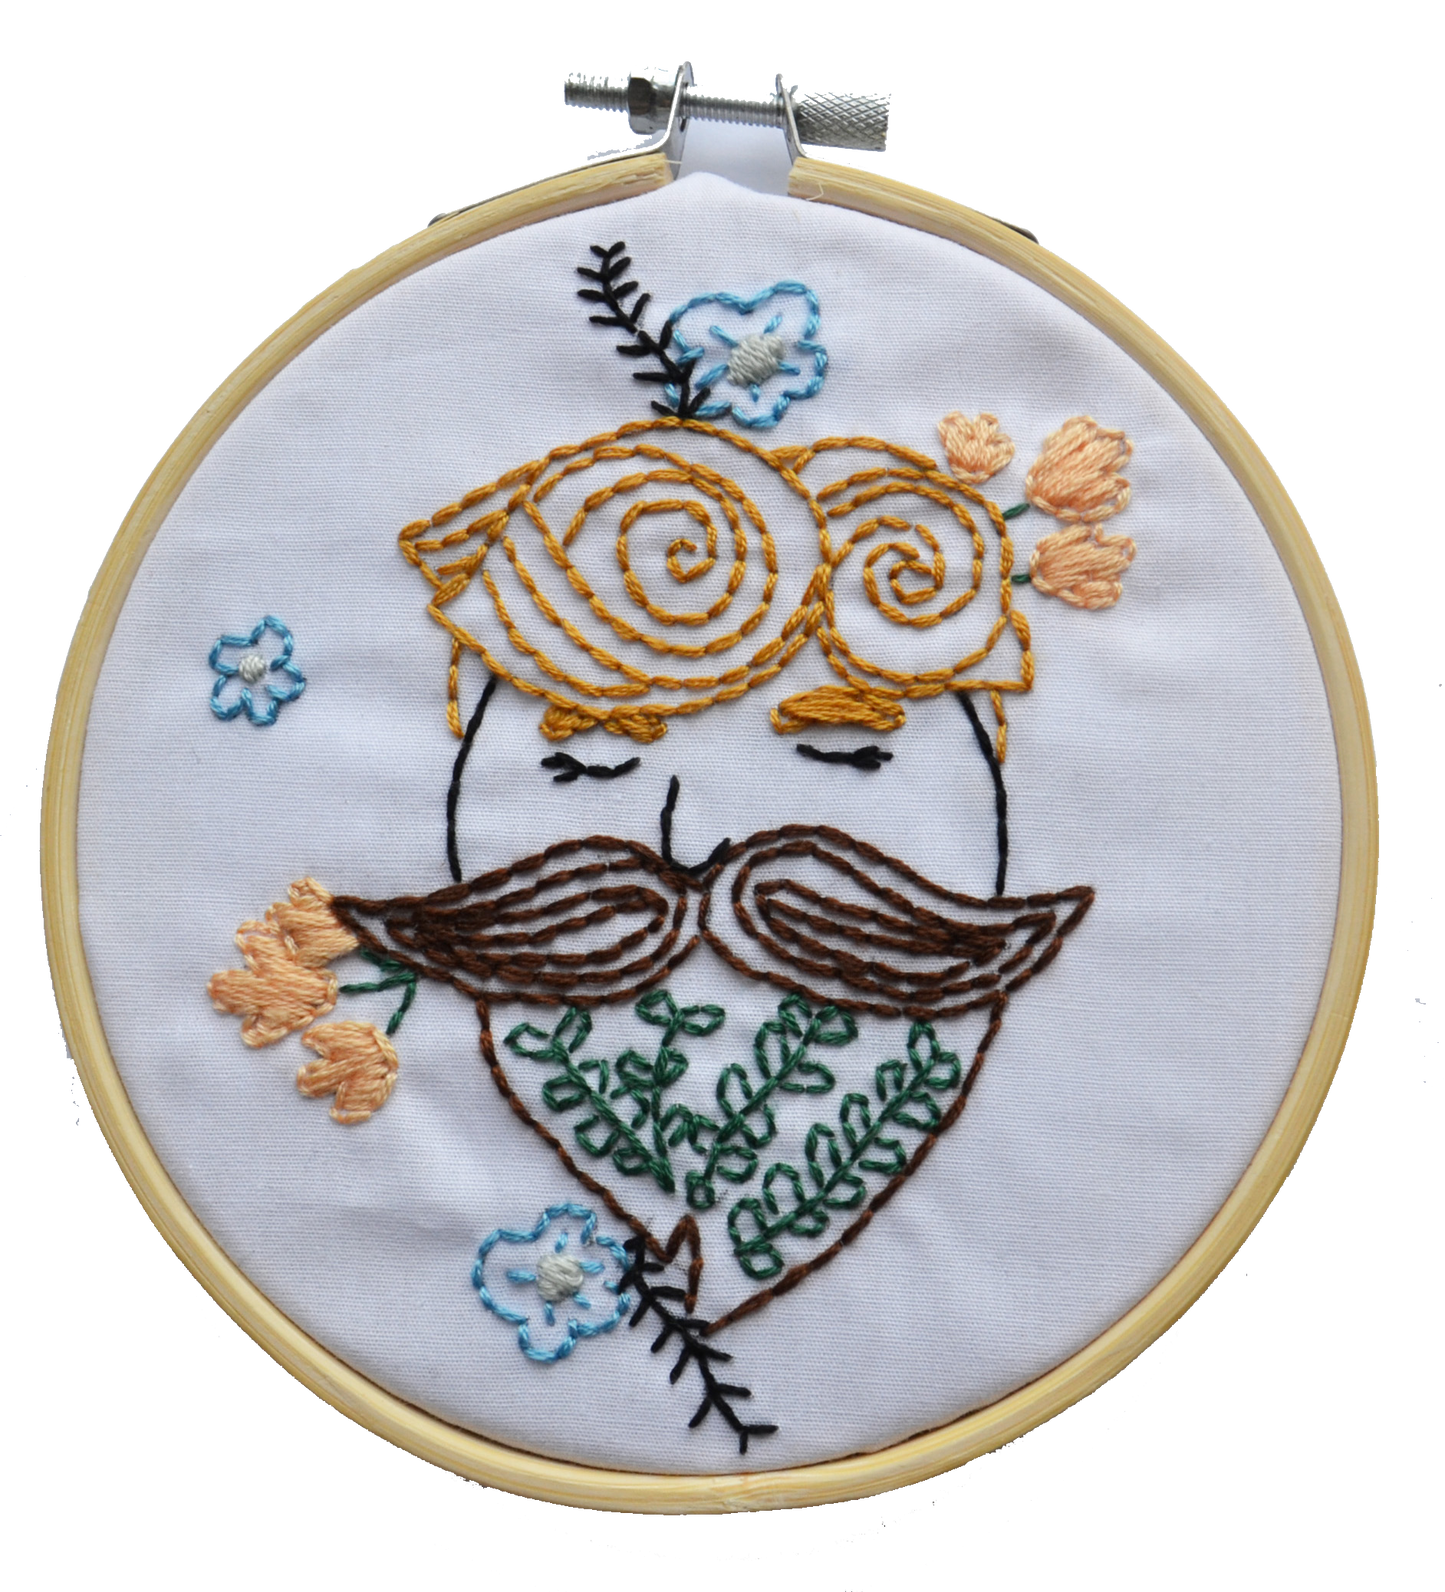 Beard Man Flower Beginner Embroidery Kit